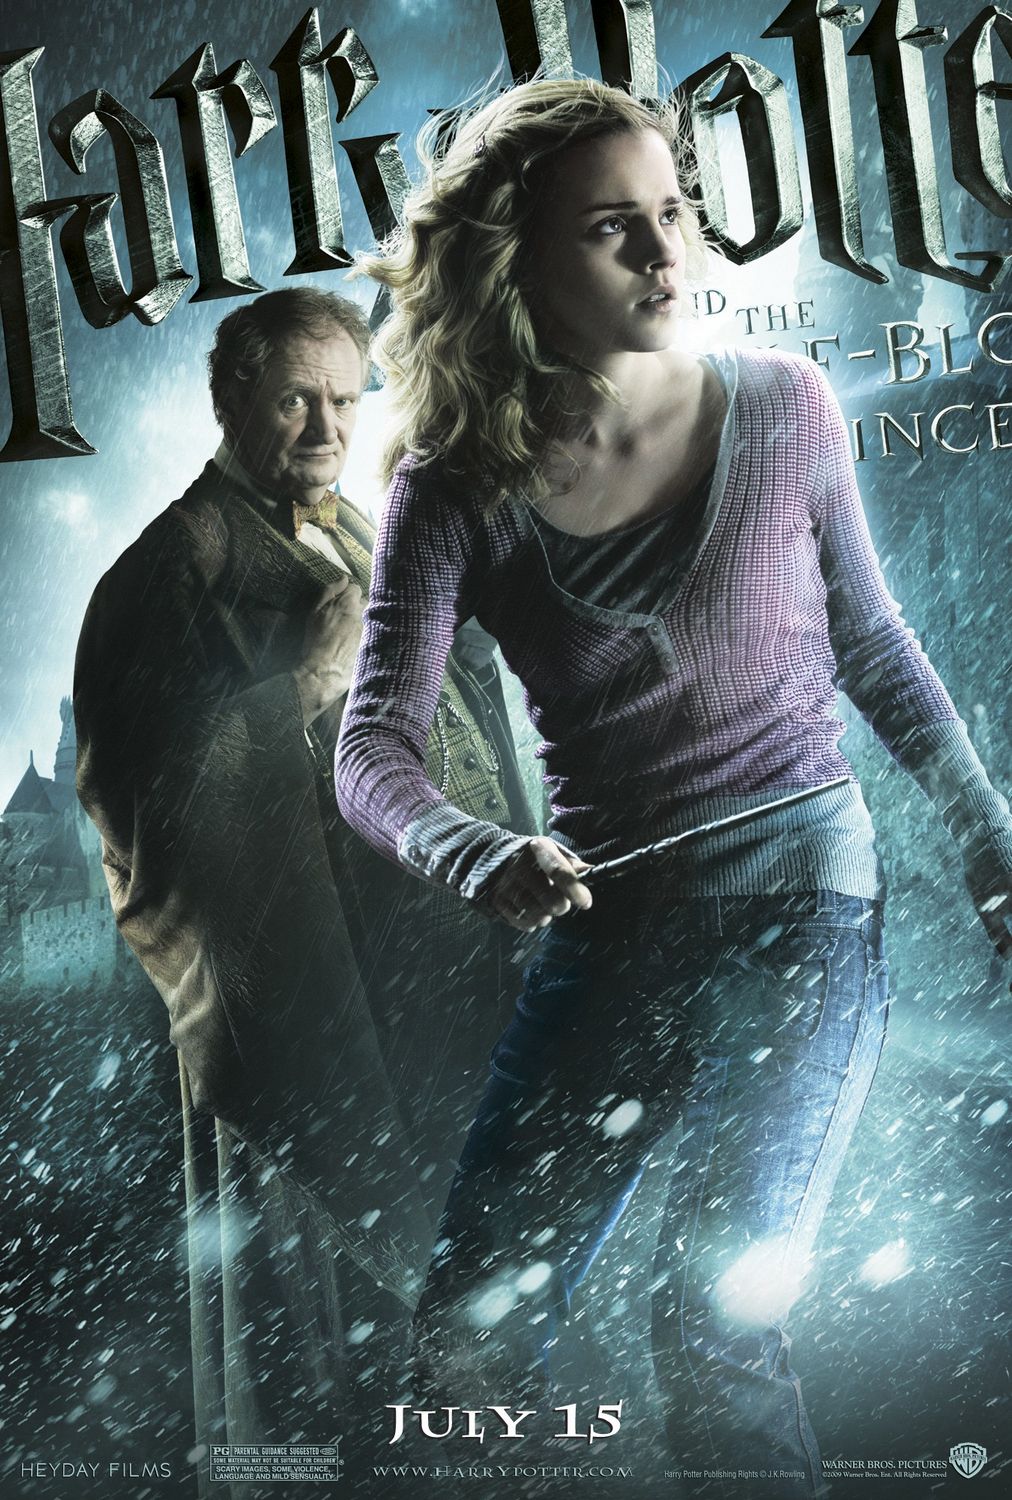 Постер - Гарри Поттер и Принц-полукровка: 1012x1500 / 337 Кб